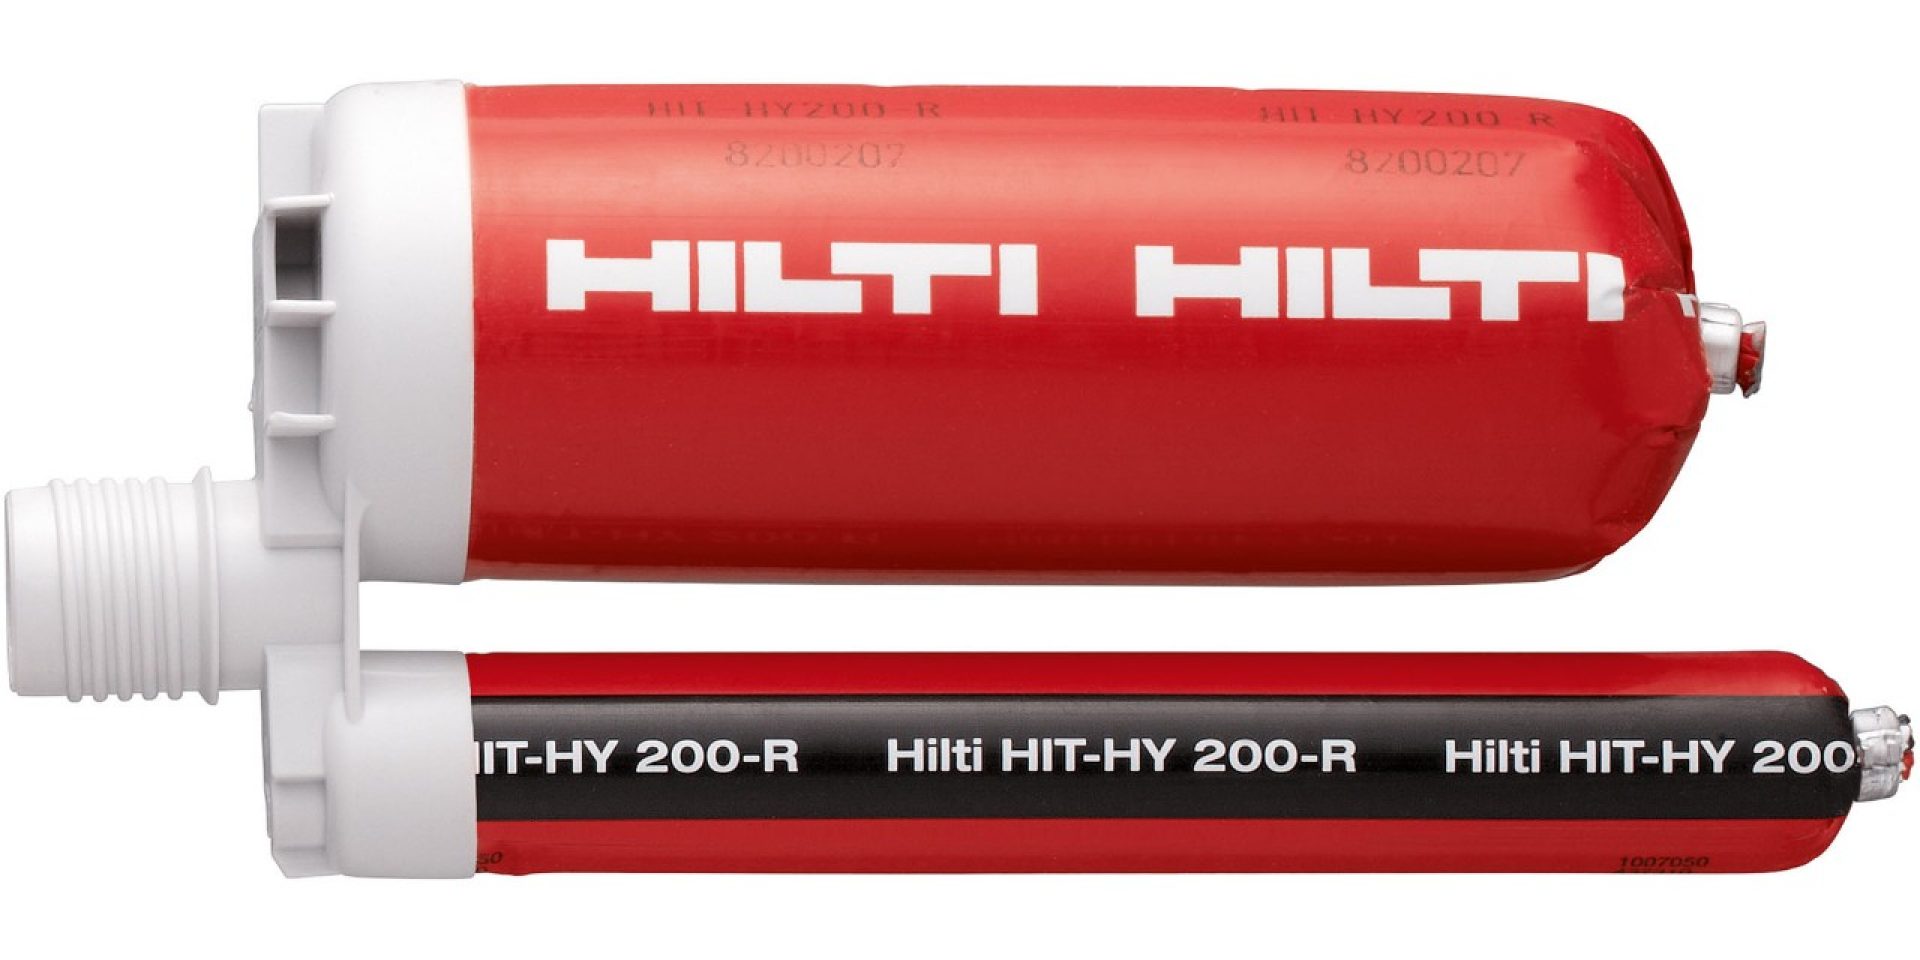 HIT-HY 200-R 終極性能注射式化學藥劑